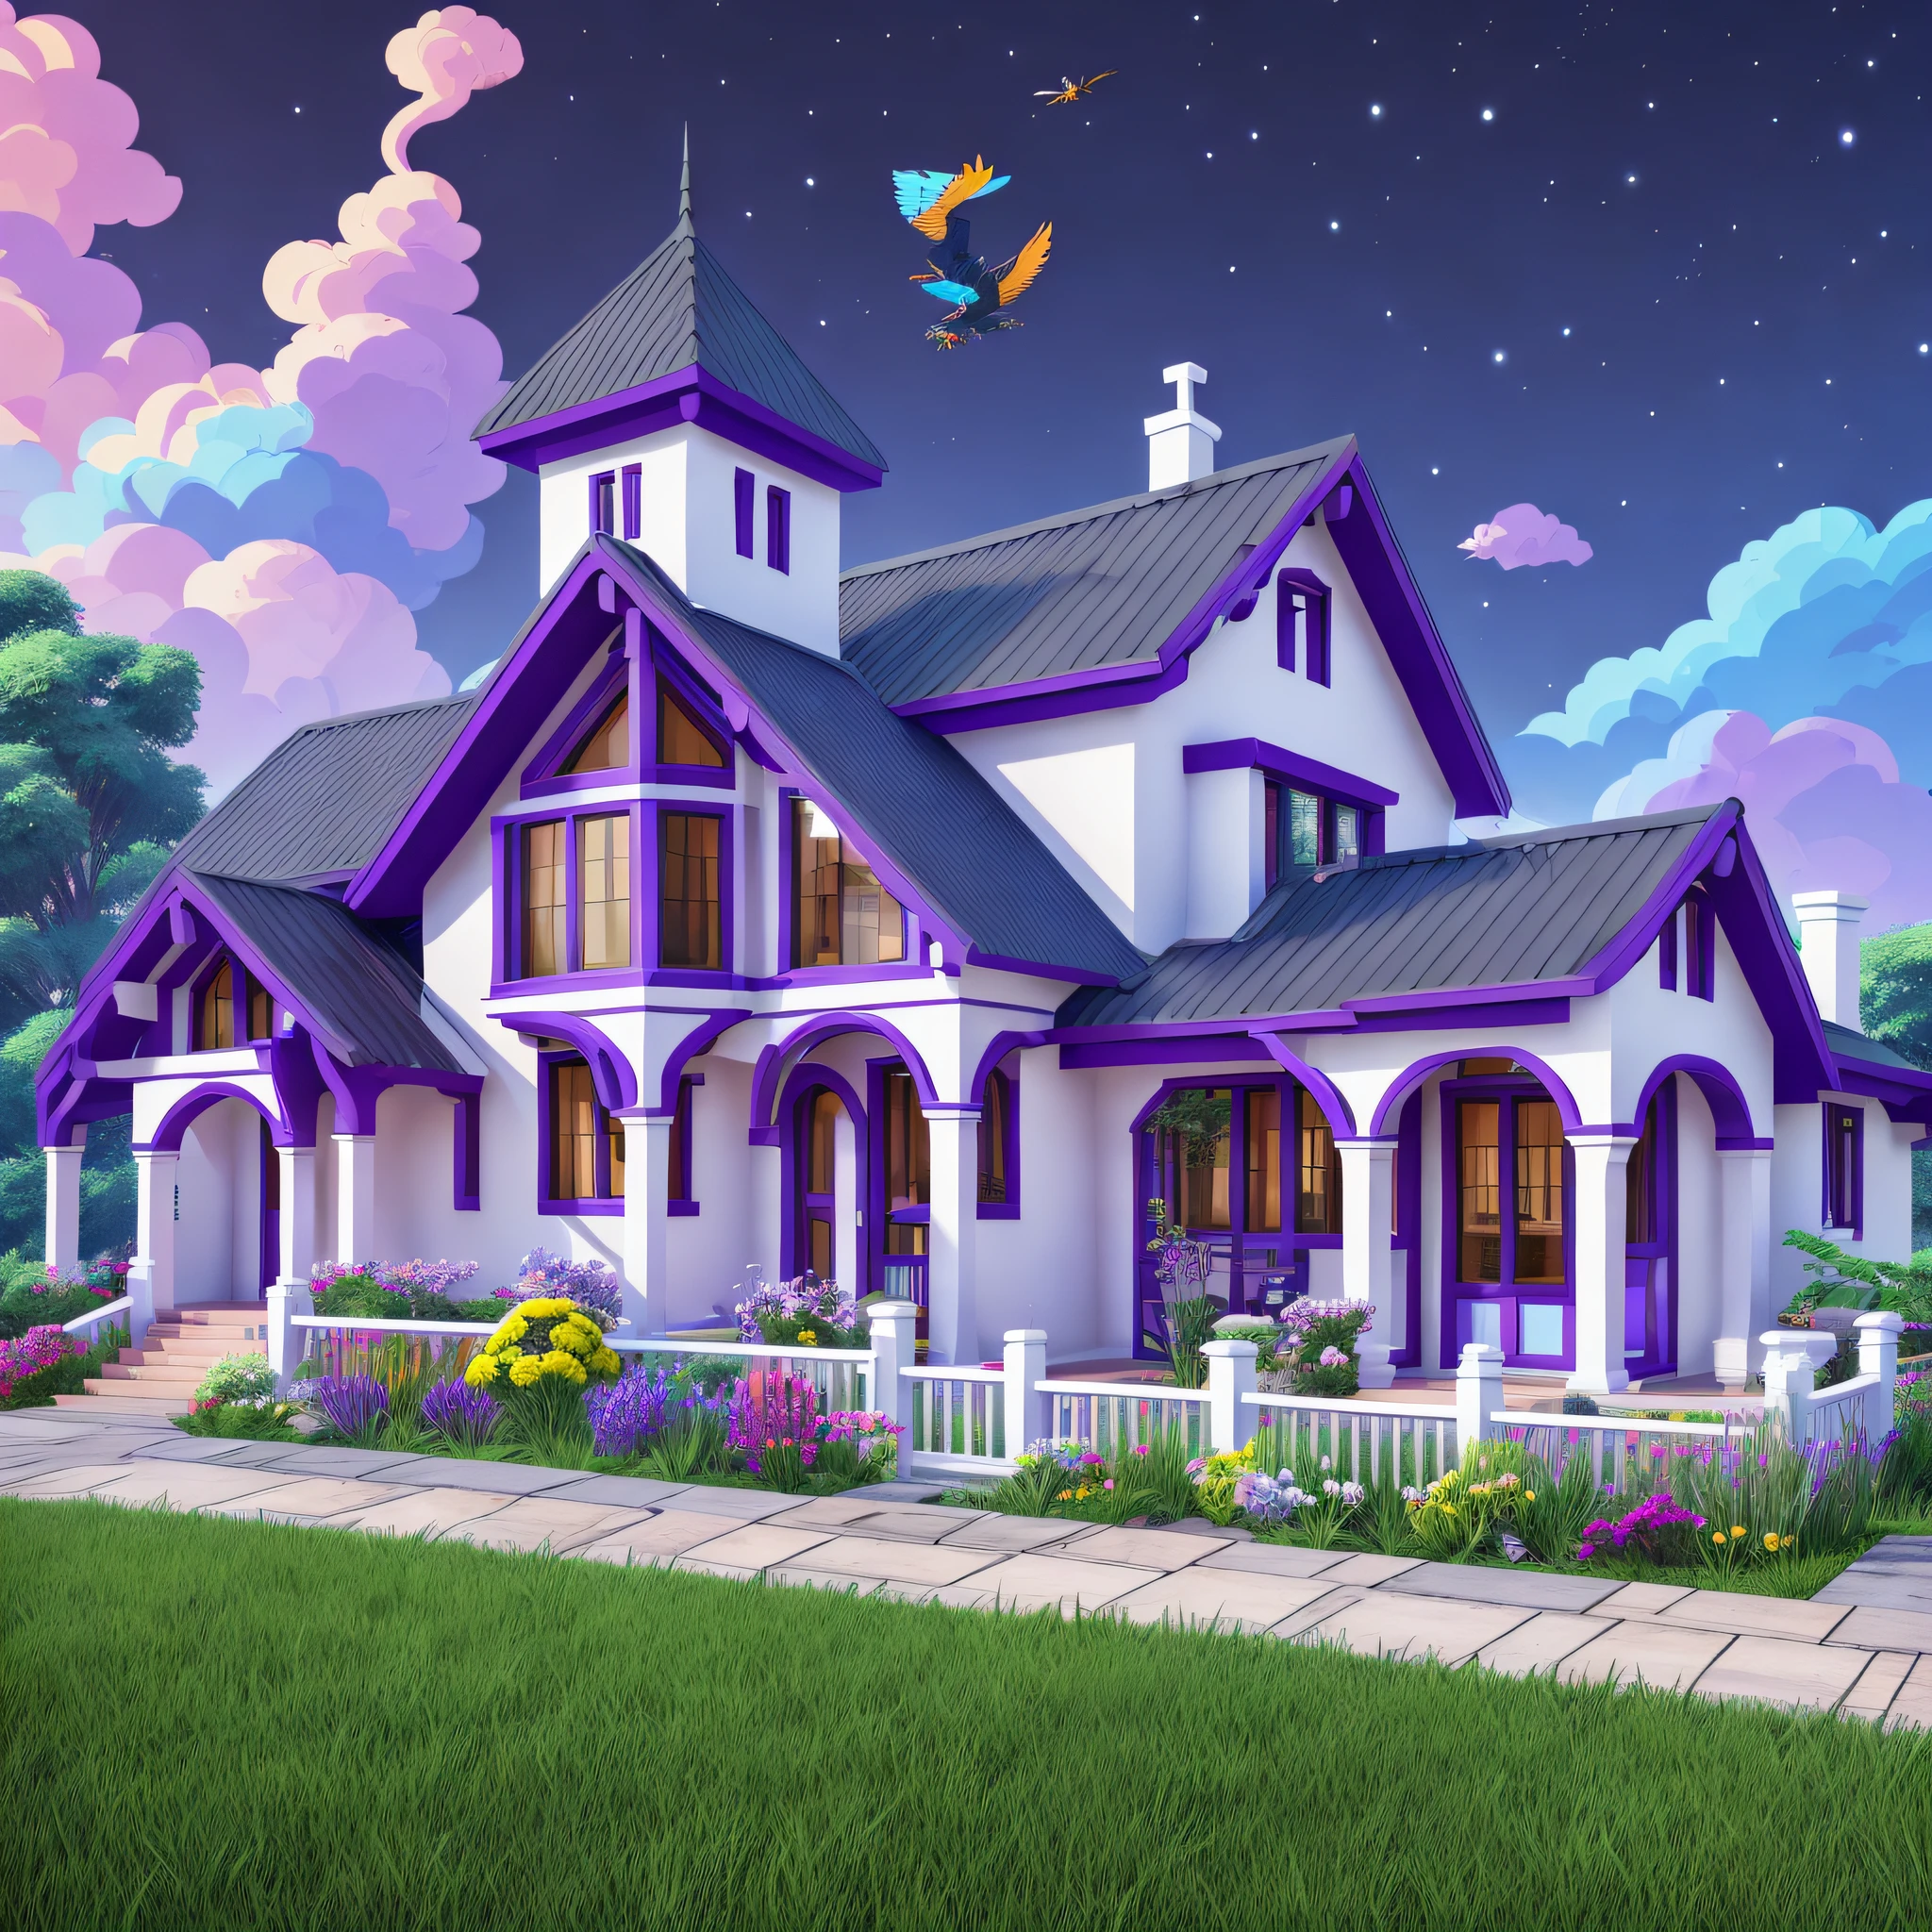 设计, 漂亮的房子, 角色扮演風格, 後面的山, 山上的其他房子, 煙囪, 格里芬飛行, 亞克力抹刀, 天空色彩鮮豔, 皇家紫, 寶藍色和白色, 4k, 鮮豔的色彩 --auto --s2